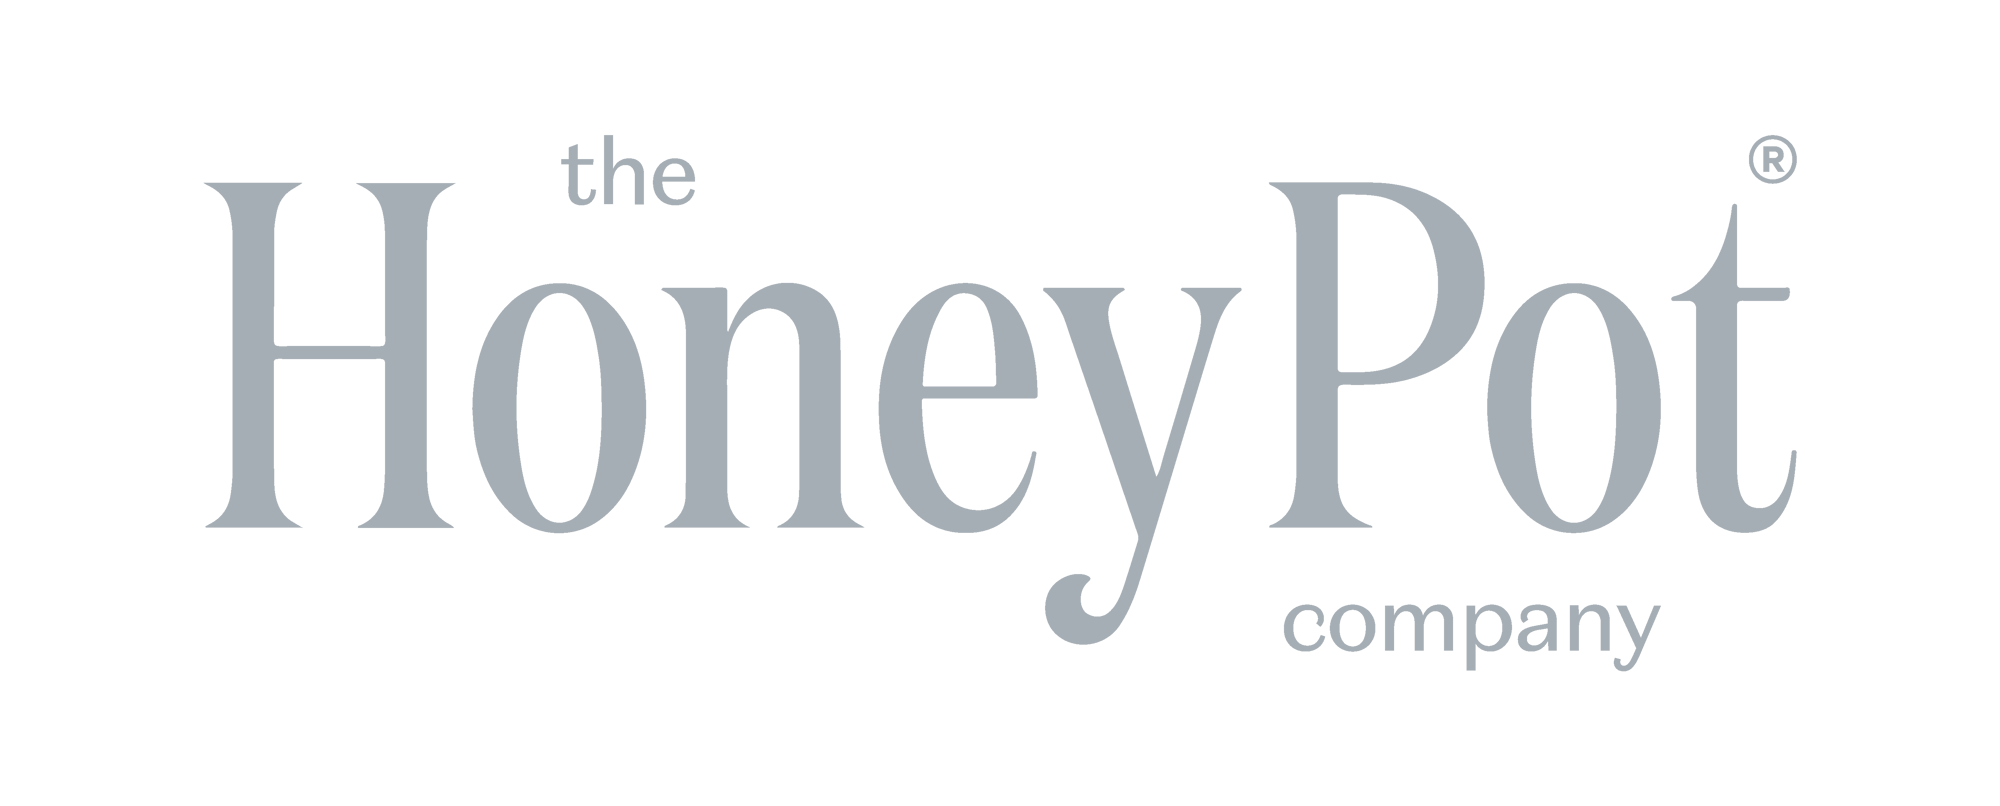 the Honey Pot company